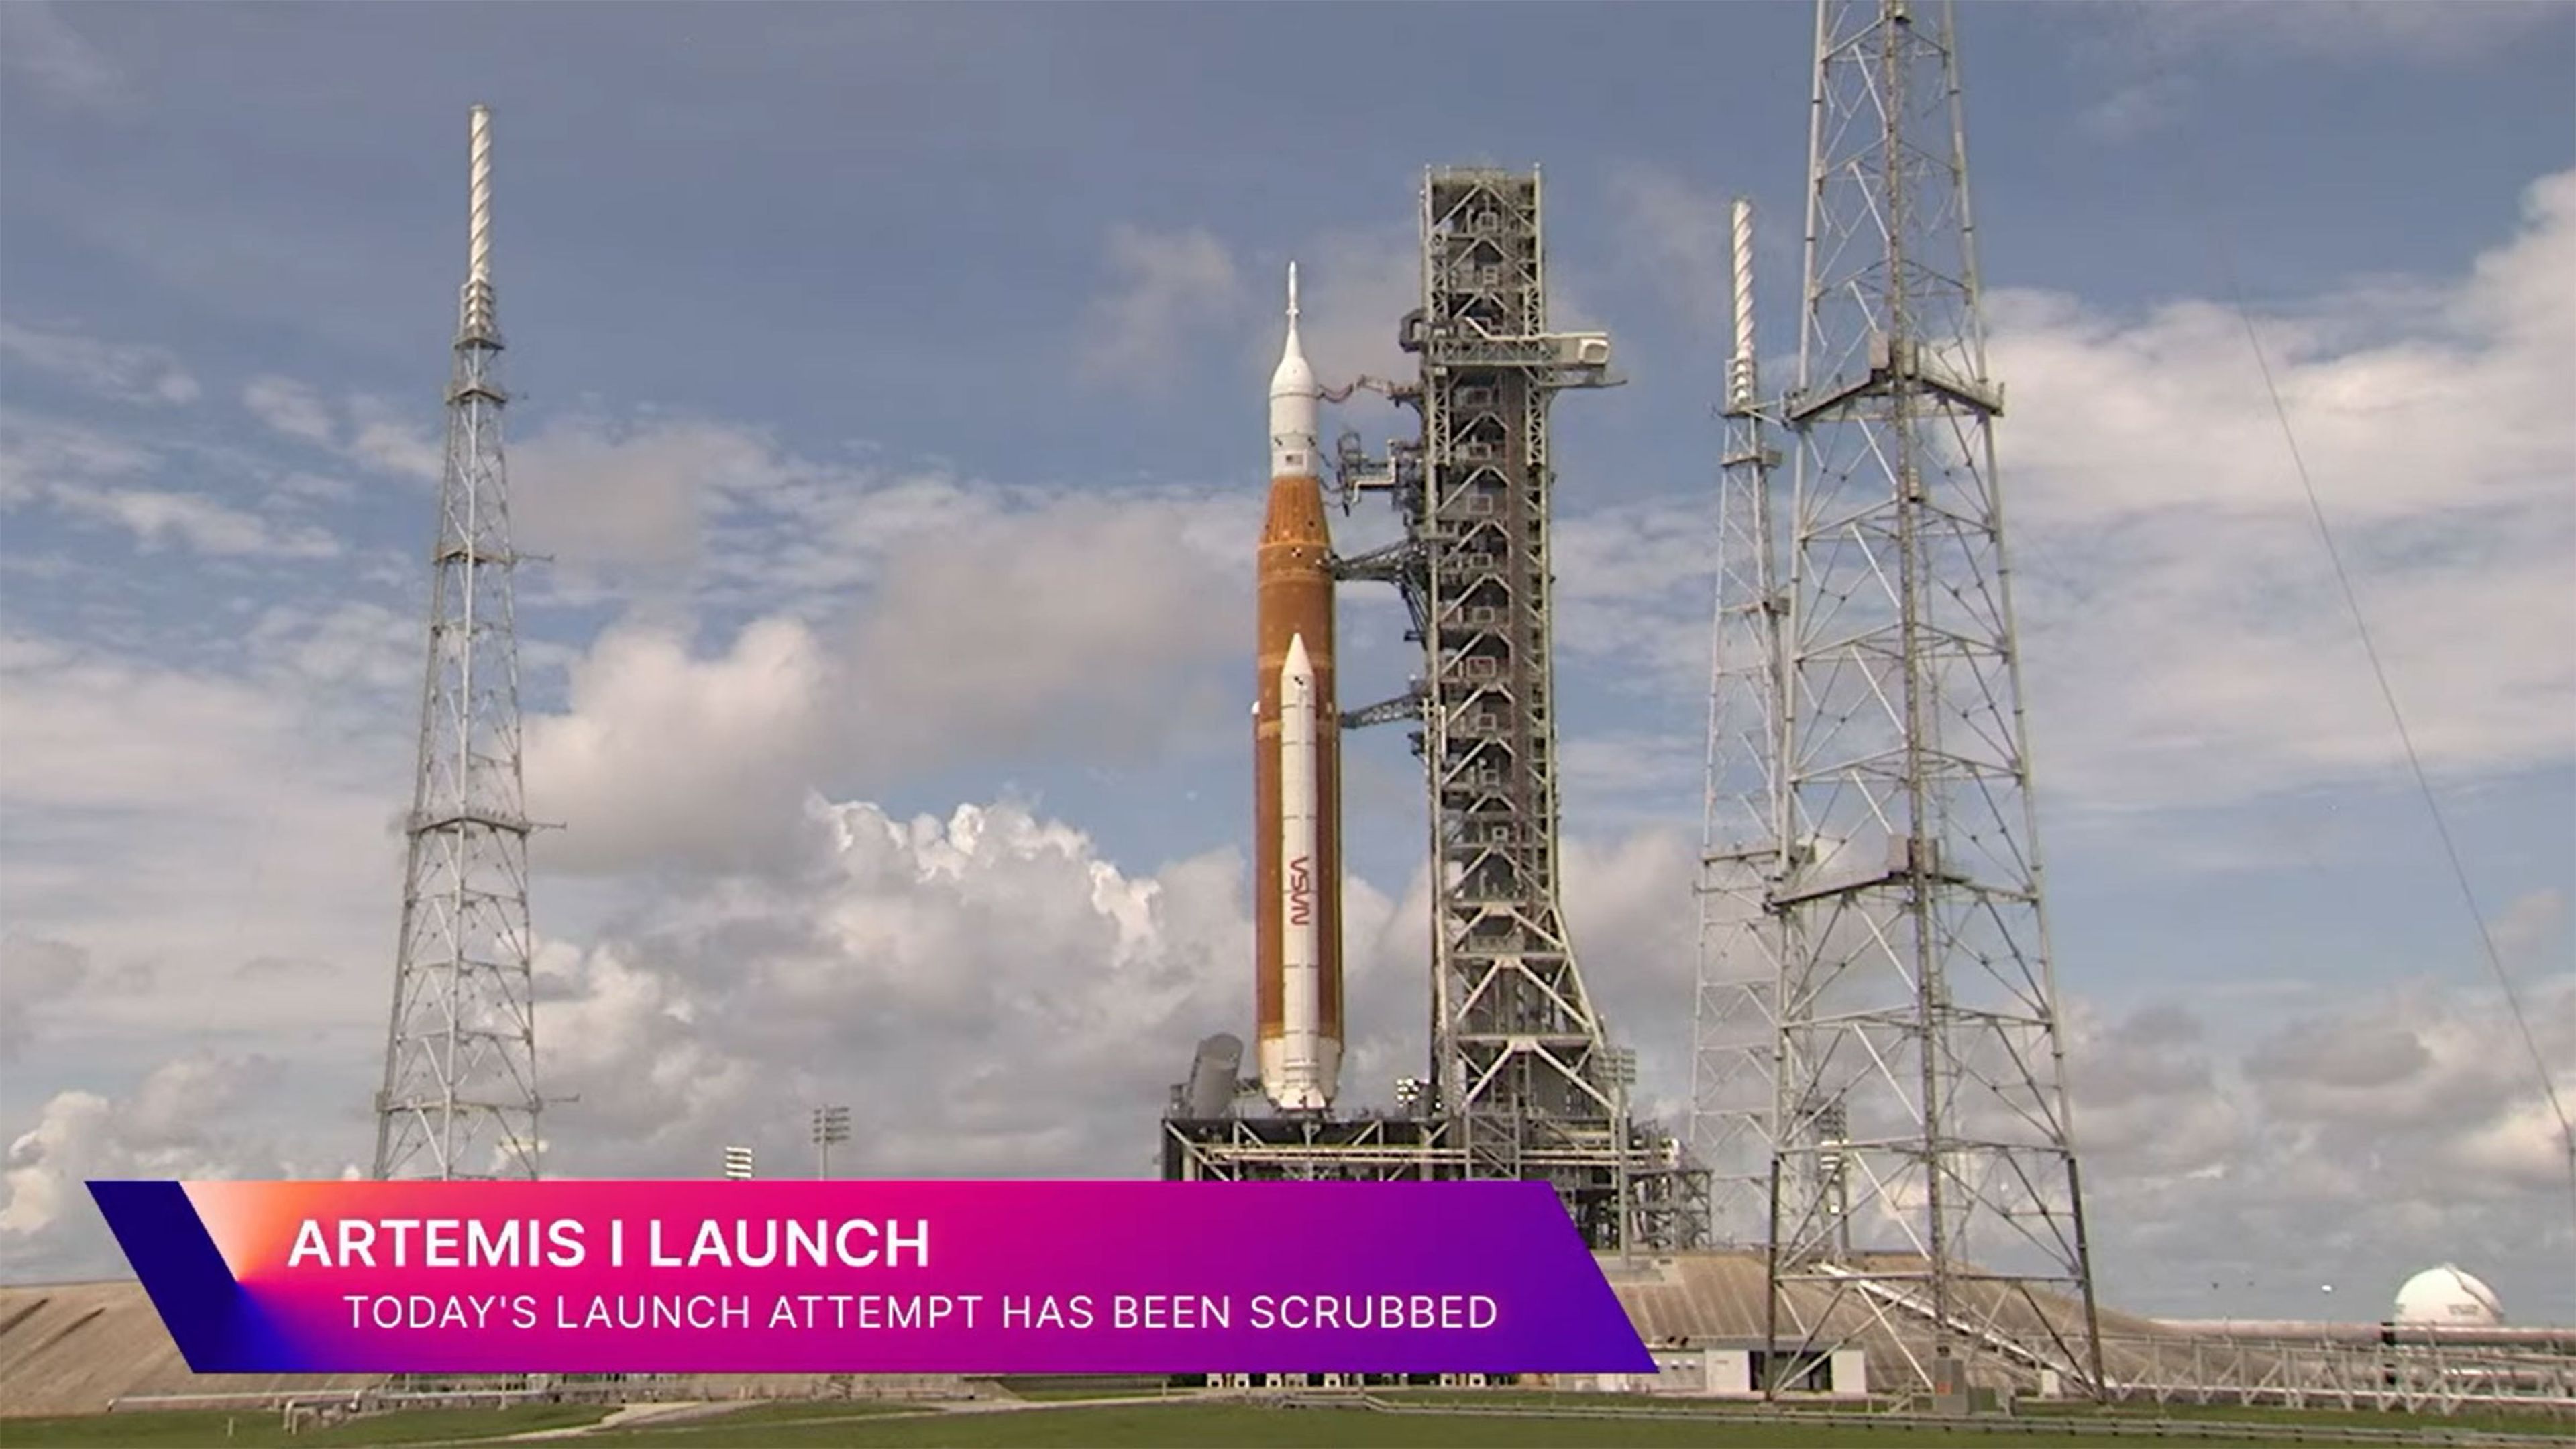 La NASA vuelve a retrasar el lanzamiento de la Artemis I, ahora por una fuga de hidrógeno